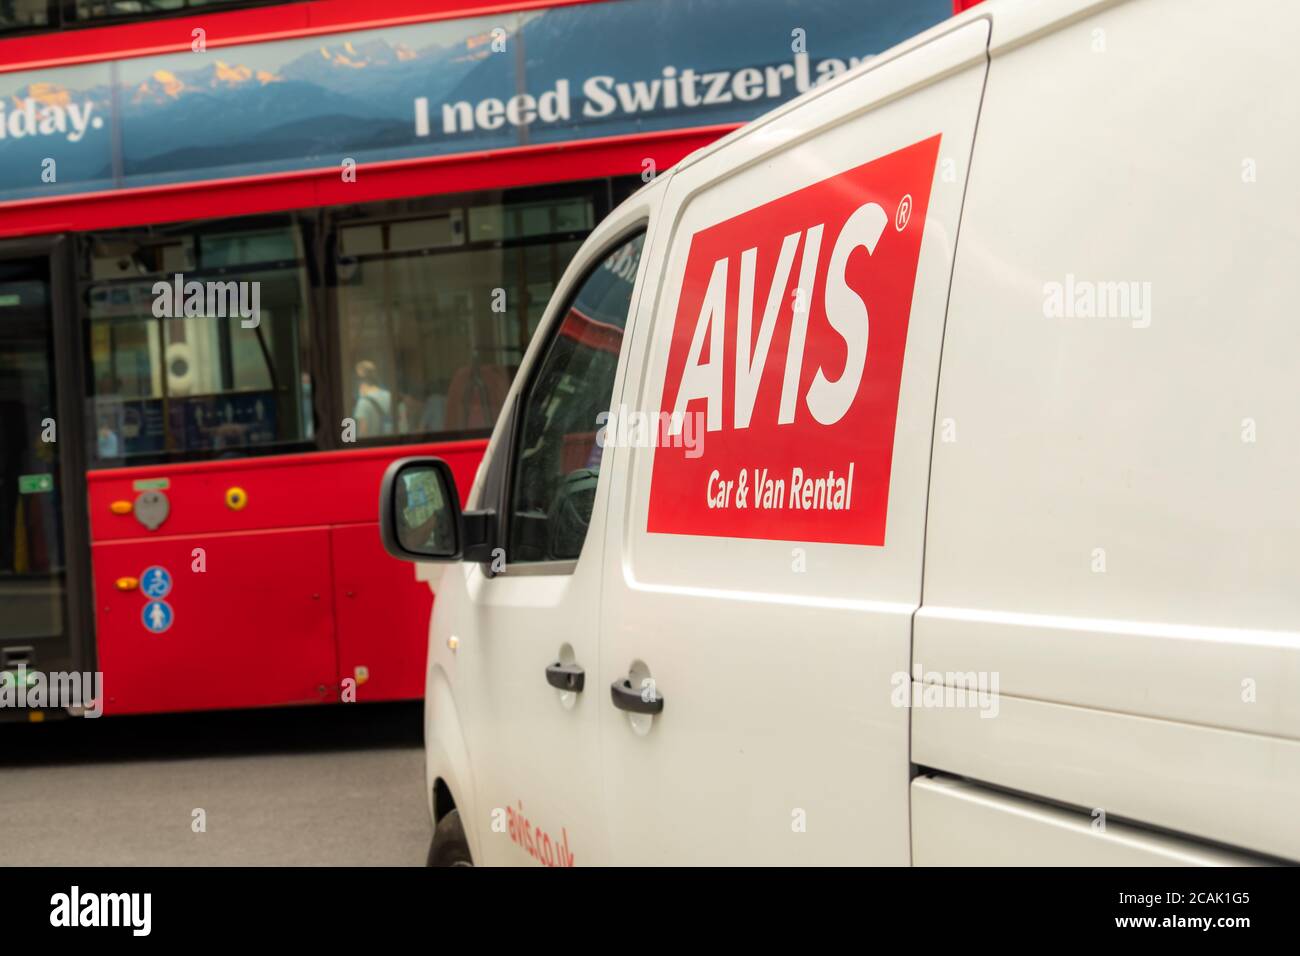 Location de minibus Avis sur London Street Banque D'Images